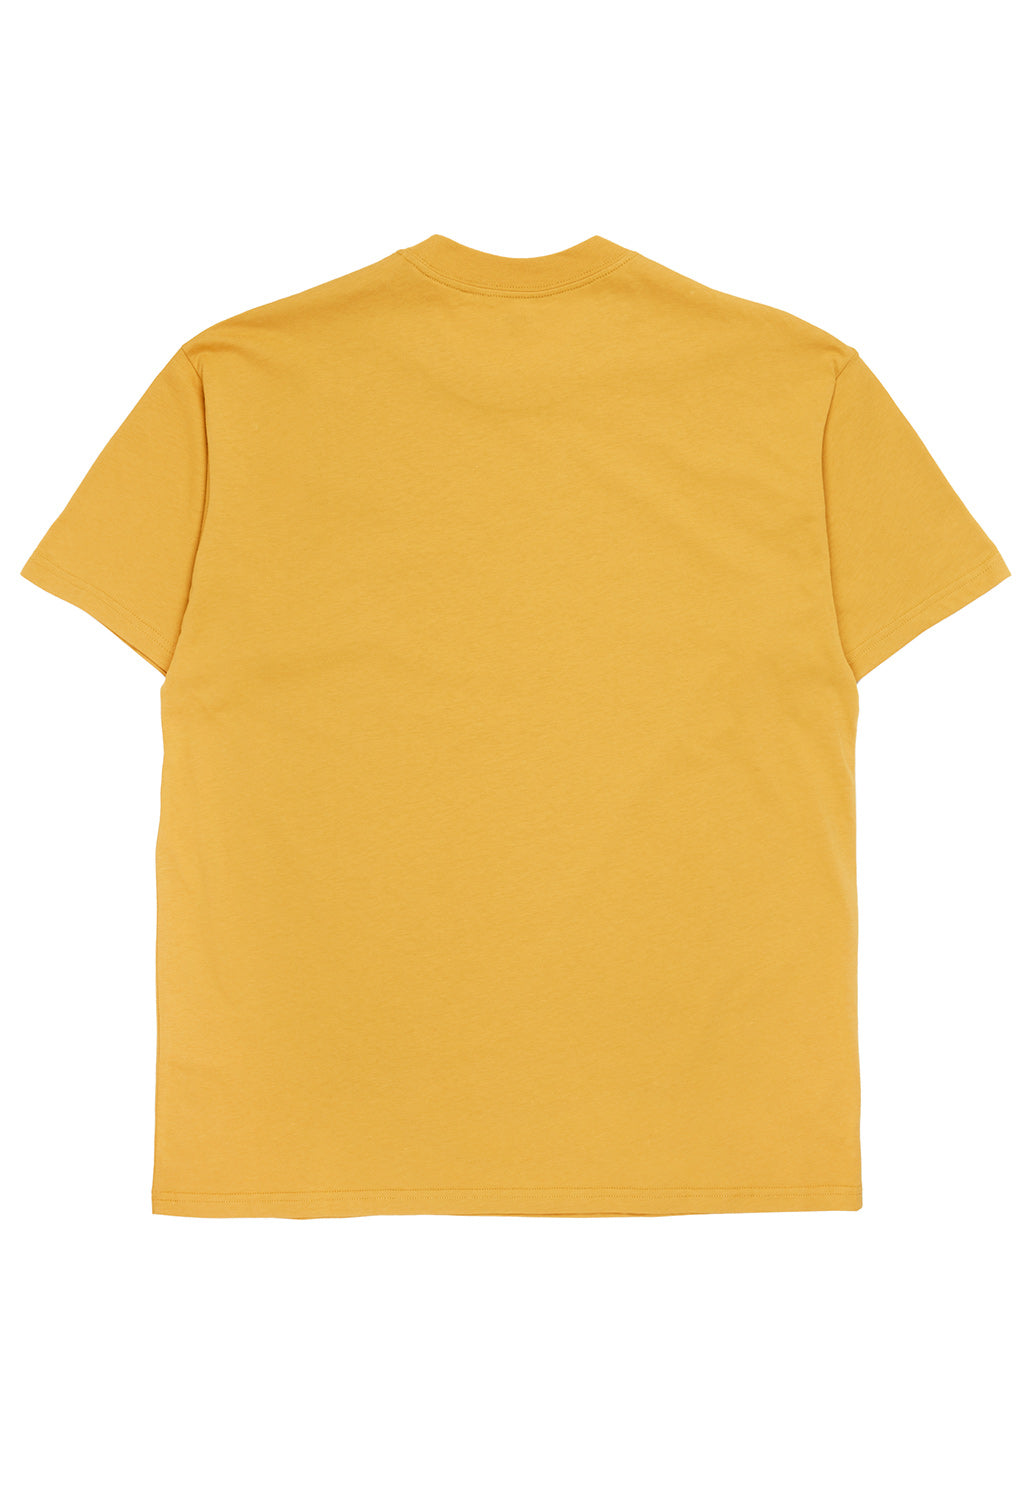 Carhartt WIP Men's Surround T-Shirt - Sunray